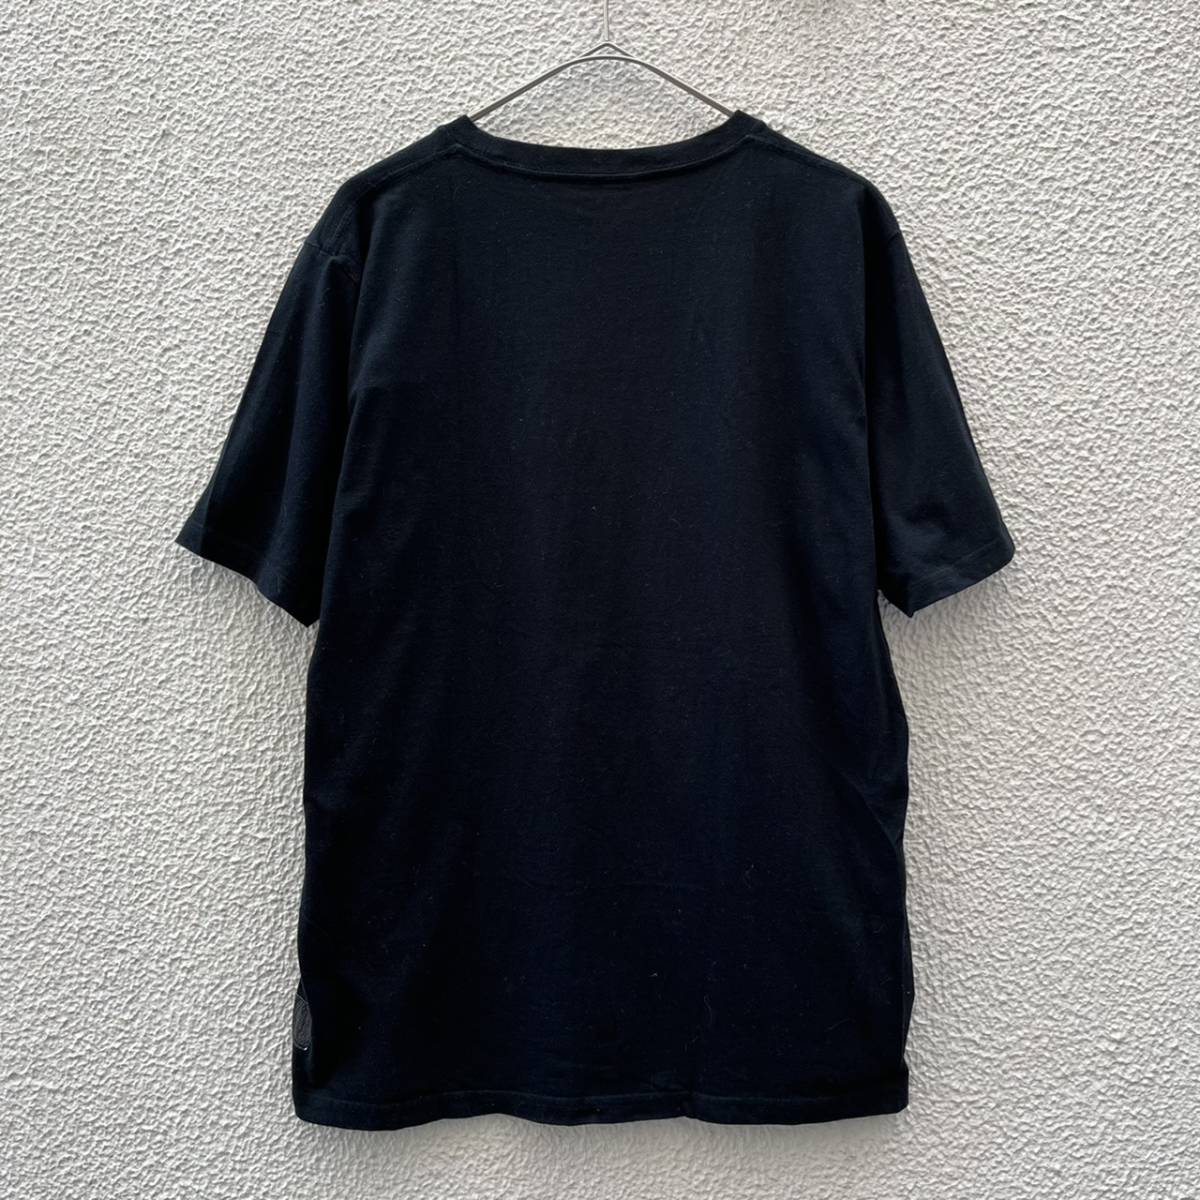 the POOL aoyama ザプールアオヤマ Mサイズ Tシャツ ロゴ ブラック 藤原ヒロシ フラグメント